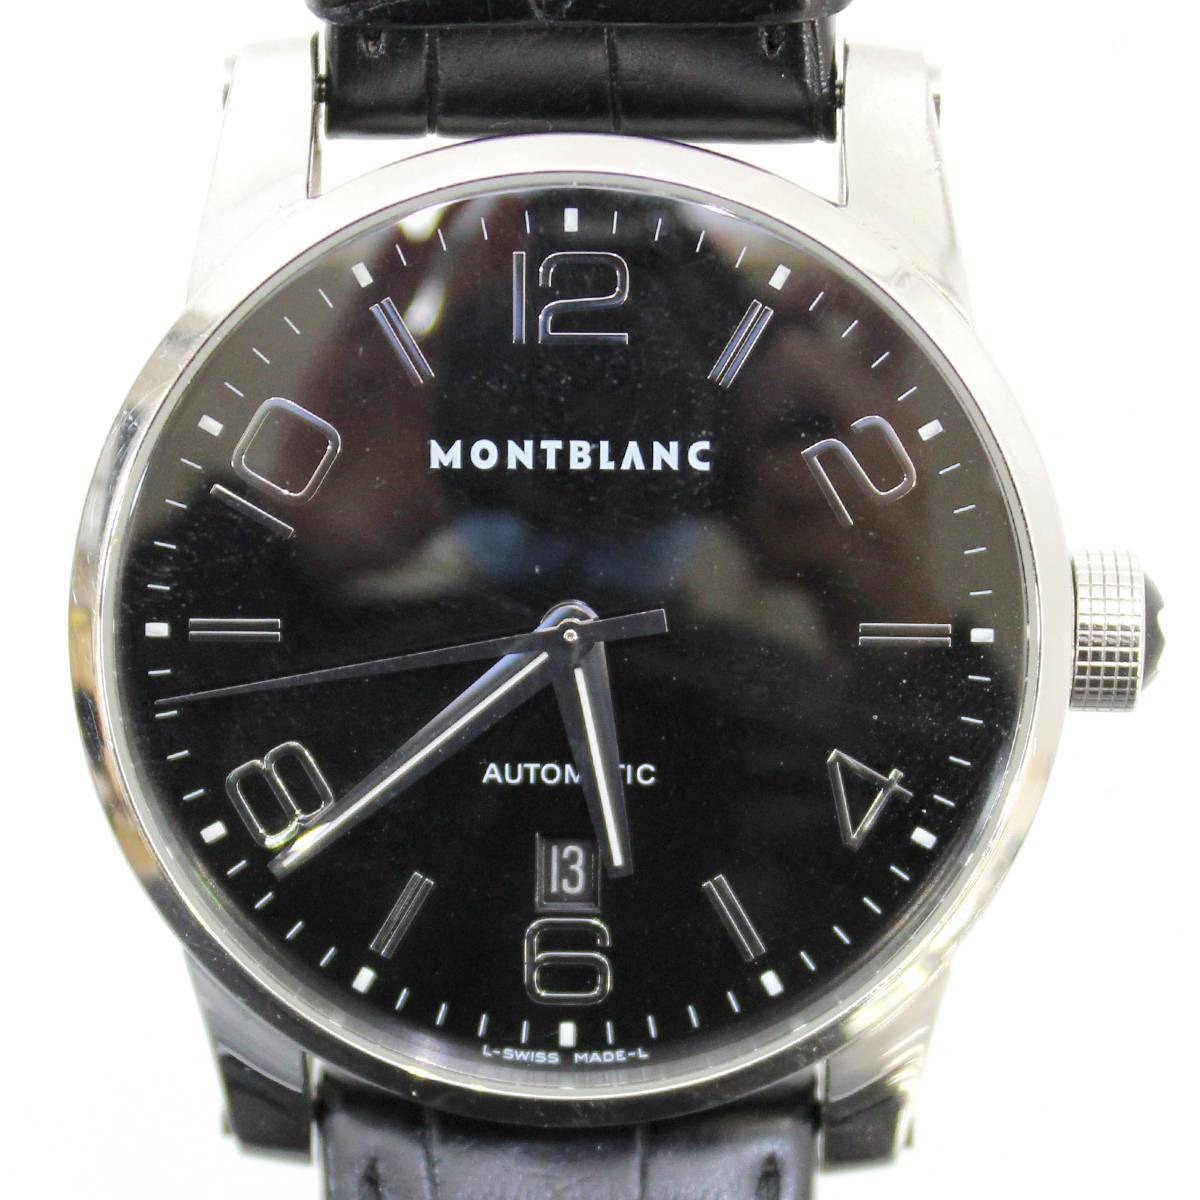 MONTBLANC/ Montblanc время War машина наручные часы SS черный инструкция по эксплуатации 7070 PB211610 FS B разряд 